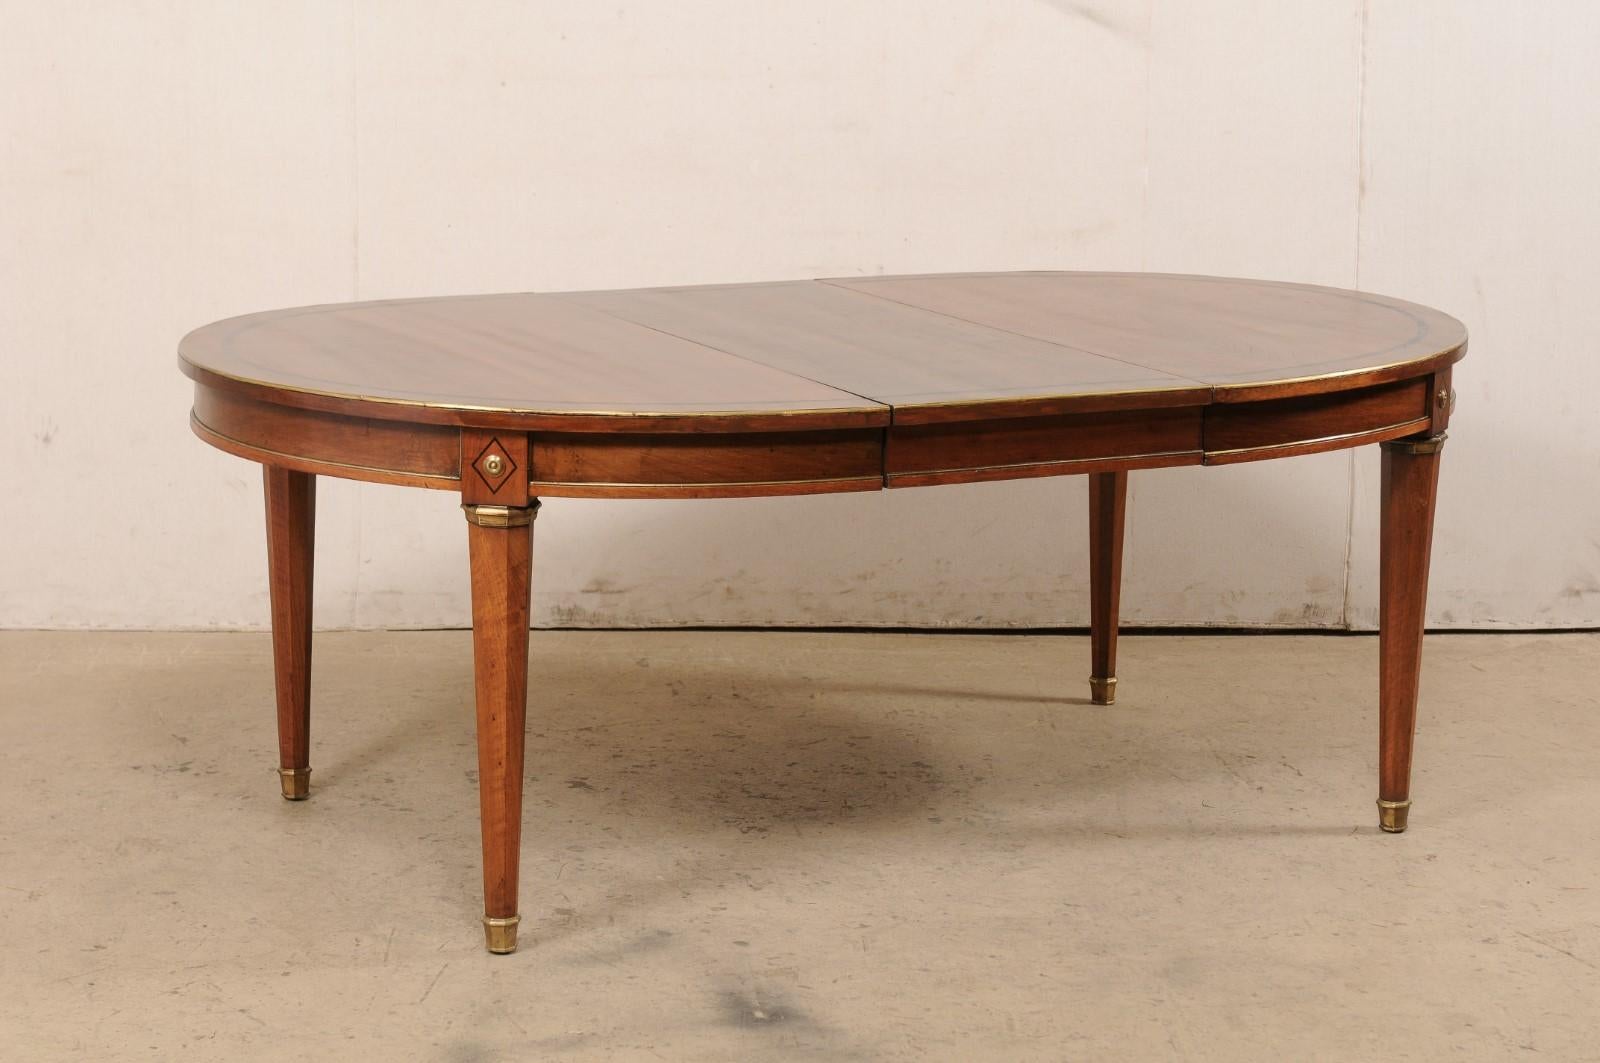 Une table à manger de style néoclassique français. Cette table vintage de France a une forme ovale avec une incrustation ovale qui orne son plateau. Une garniture en laiton souligne le bord supérieur ainsi que les lignes épurées de la jupe sur le